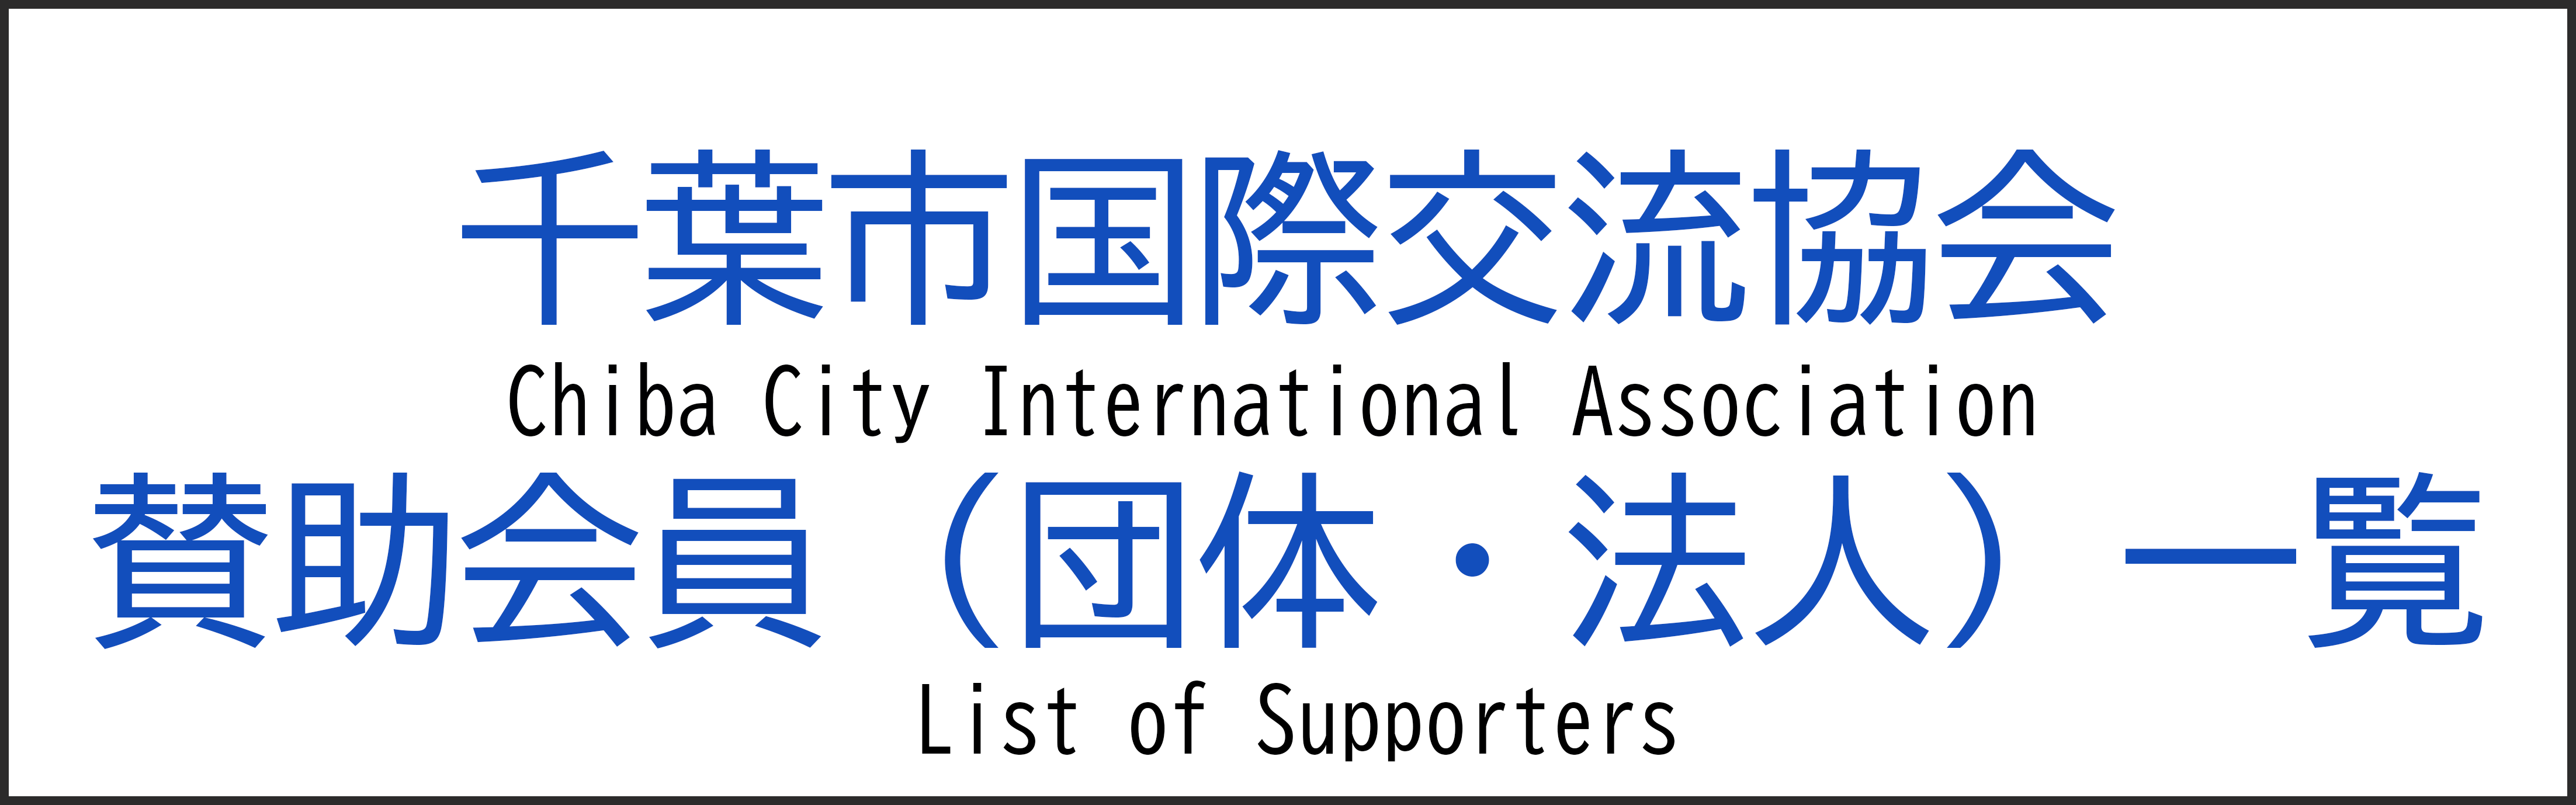 Списак чланова подршке (организације/корпорације)